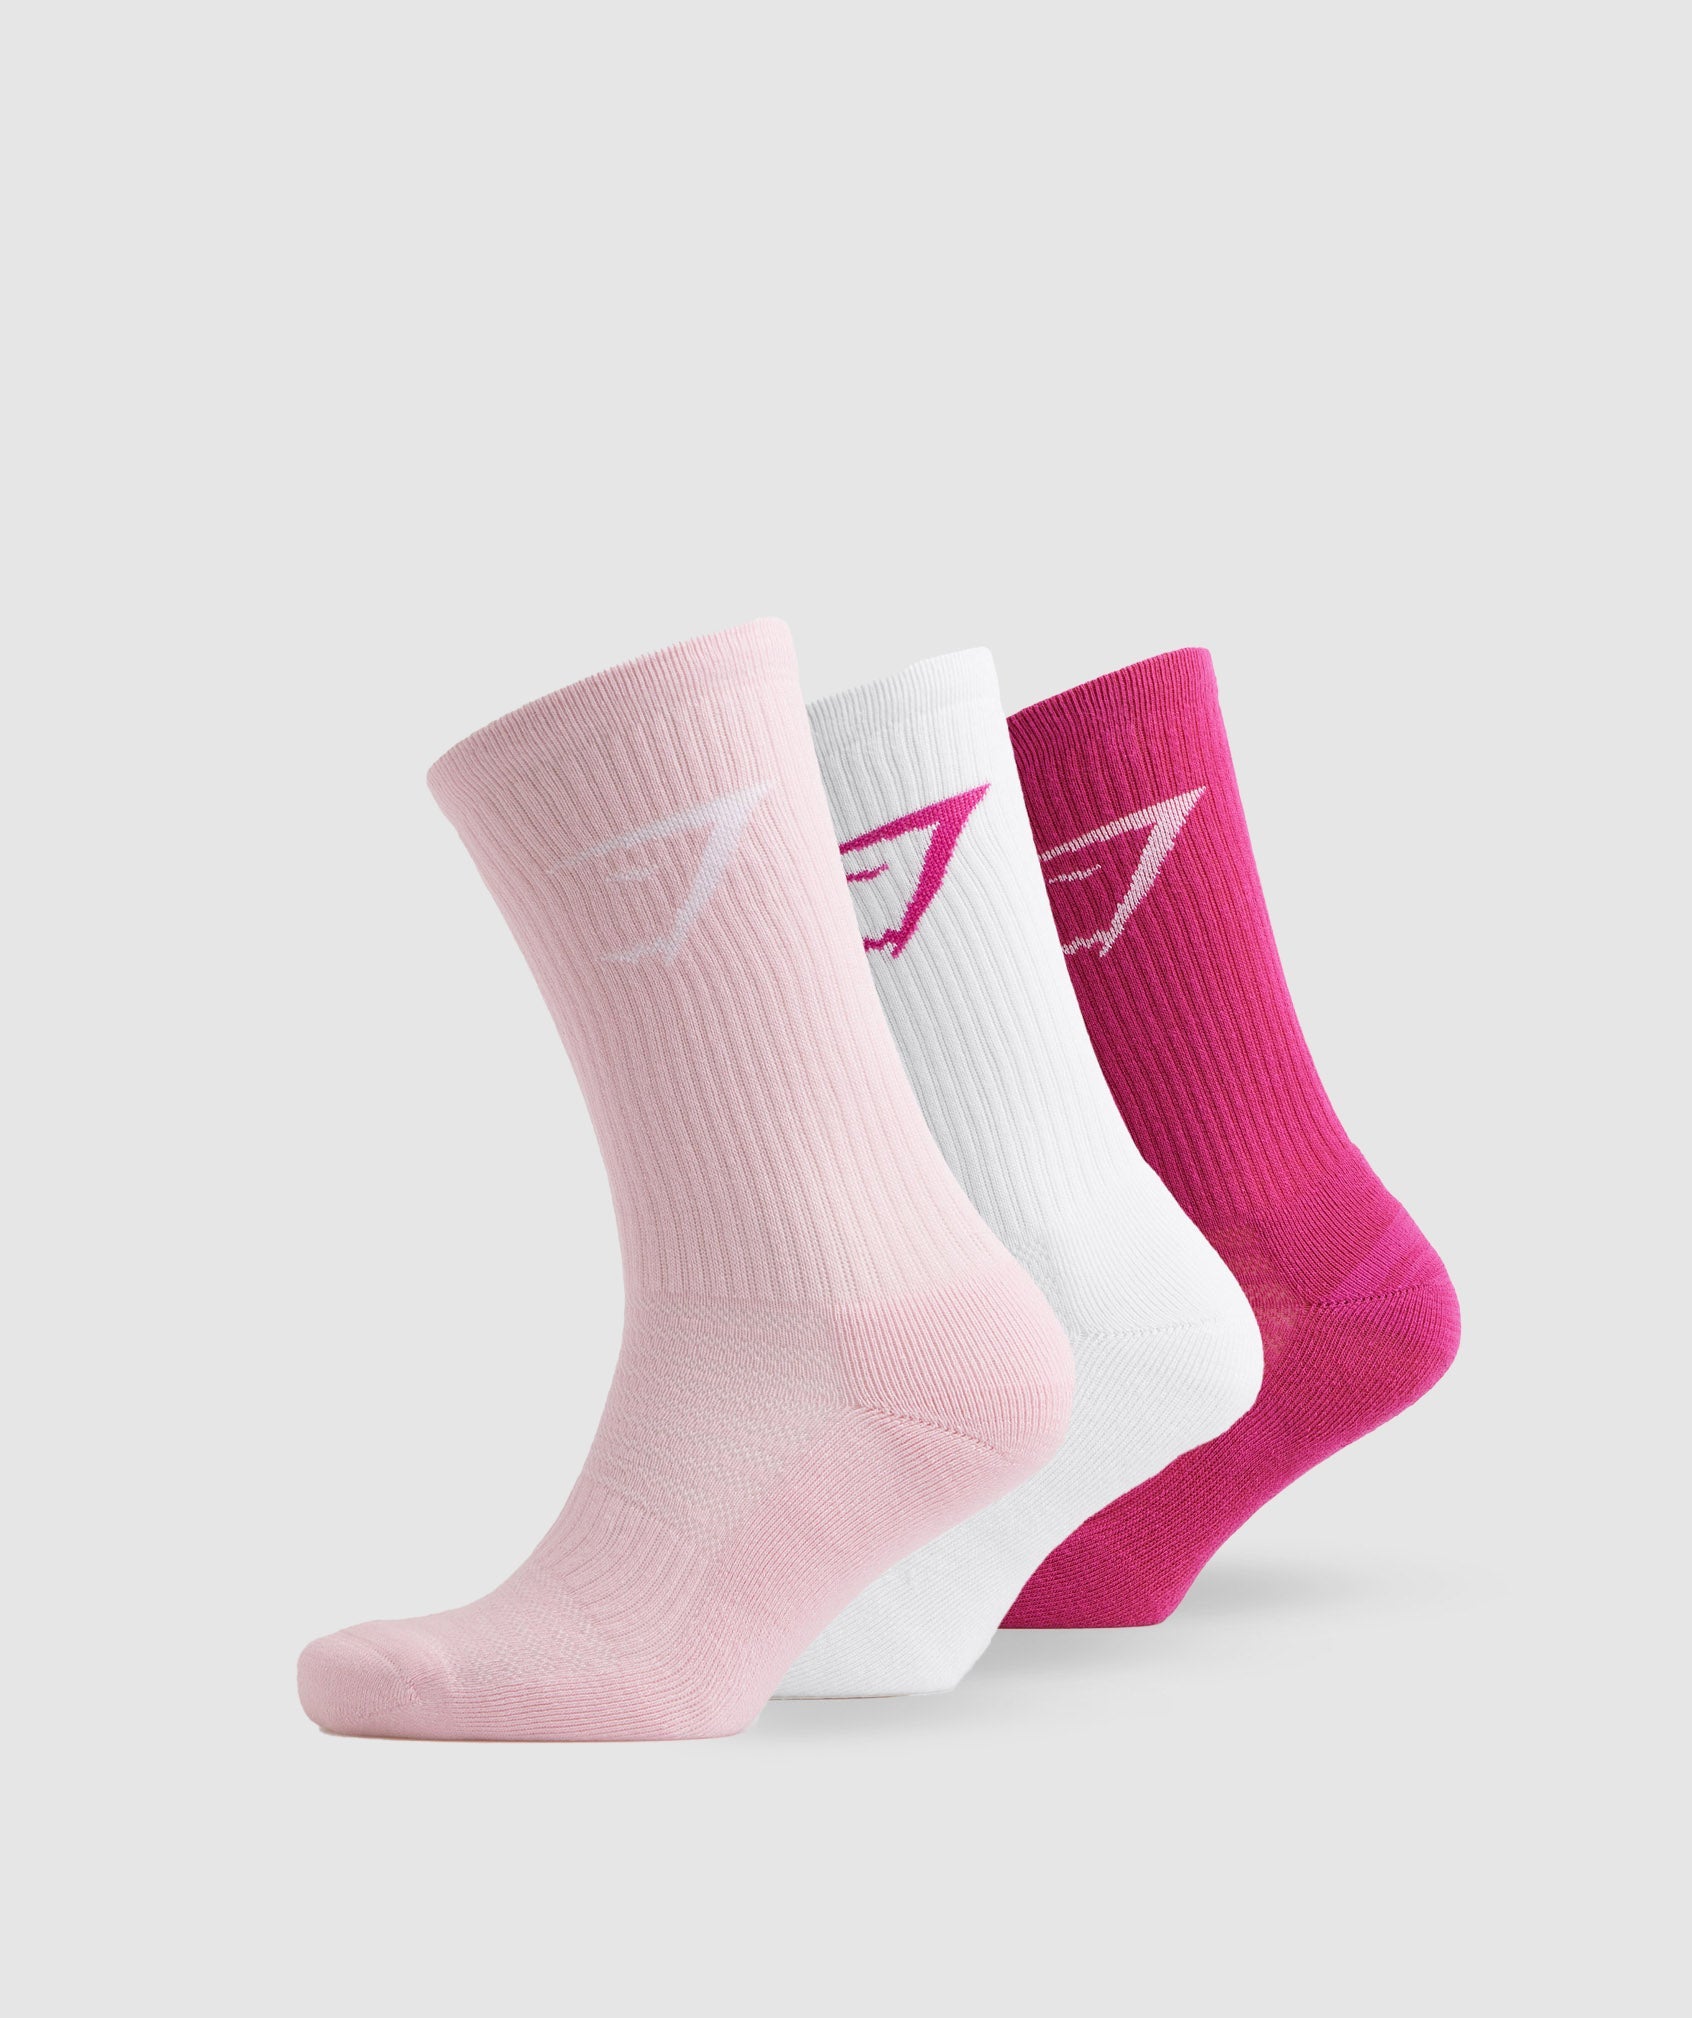 Gymshark Crew Socks 3pk - Magenta Pink/White/Sweet Pink